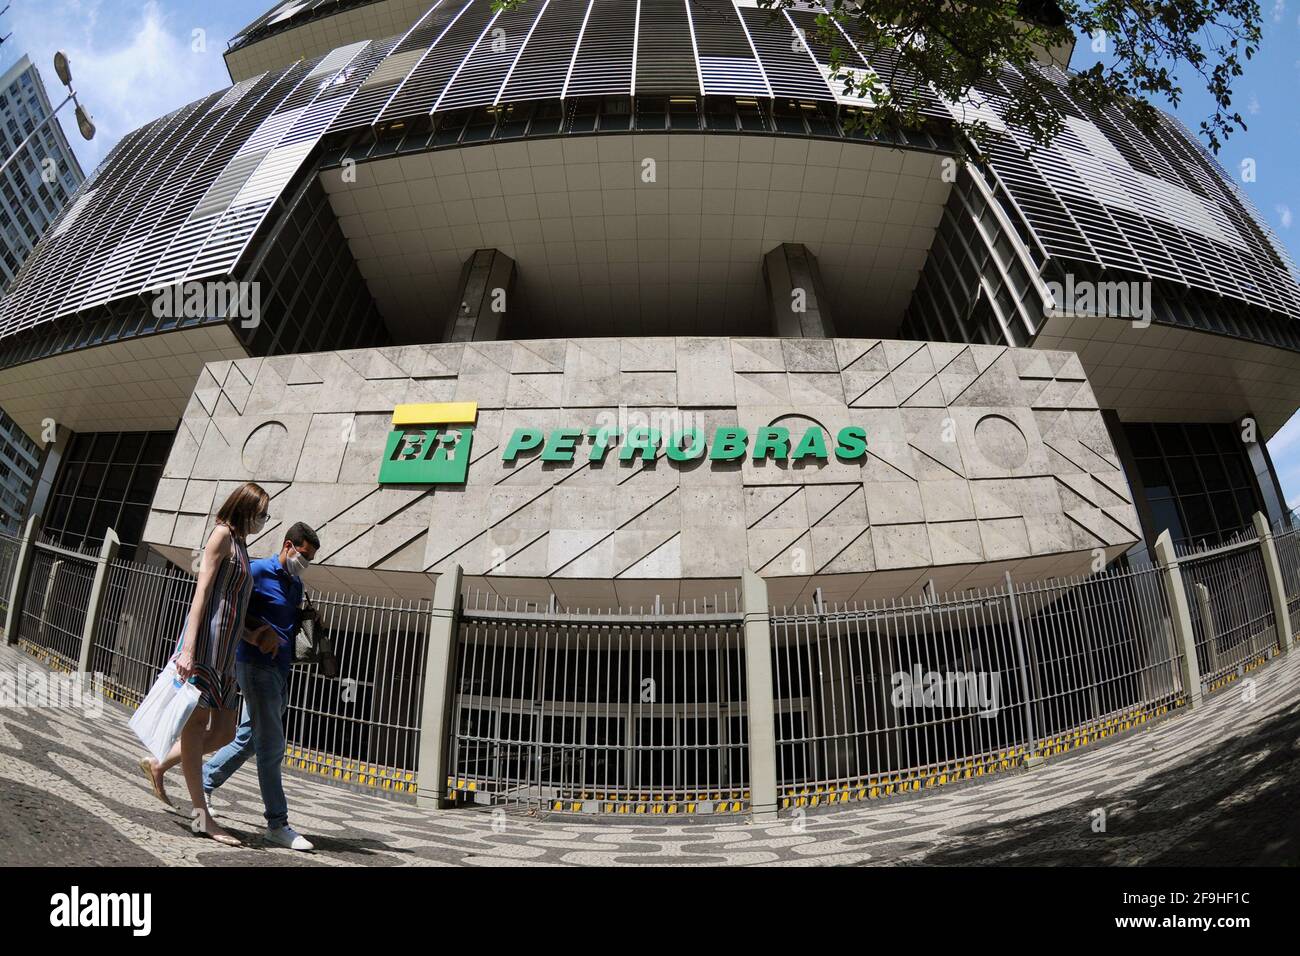 Rio de Janeiro, Brésil, 15 avril 2020. Petrobras Building (Petroleo Brasileiro S.A), une société d'État dont le siège est situé dans le centre-ville de Rio de Banque D'Images